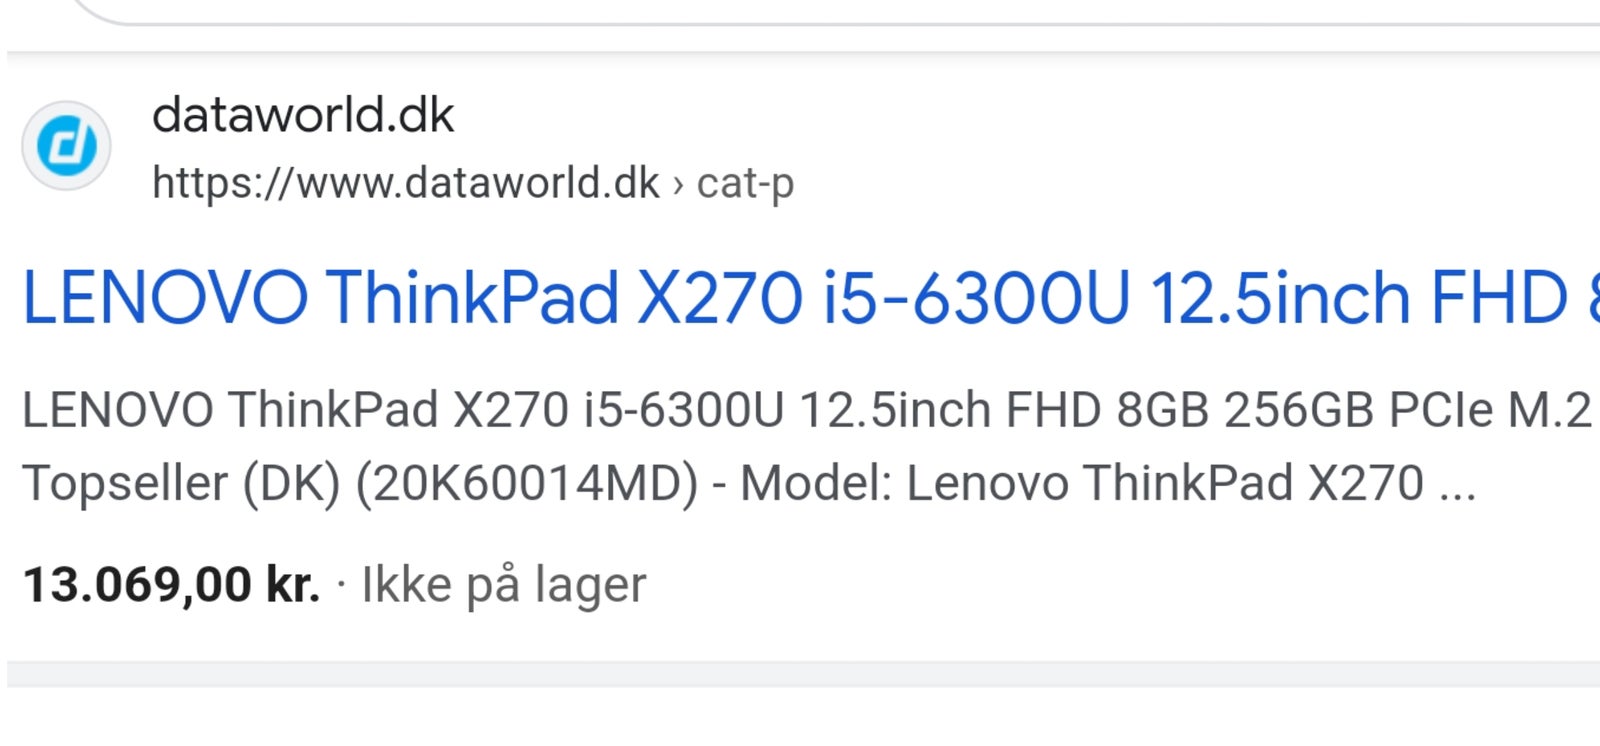 Lenovo Thinkpad X270, Intel(R) Core(TM) i5-7200U CPU